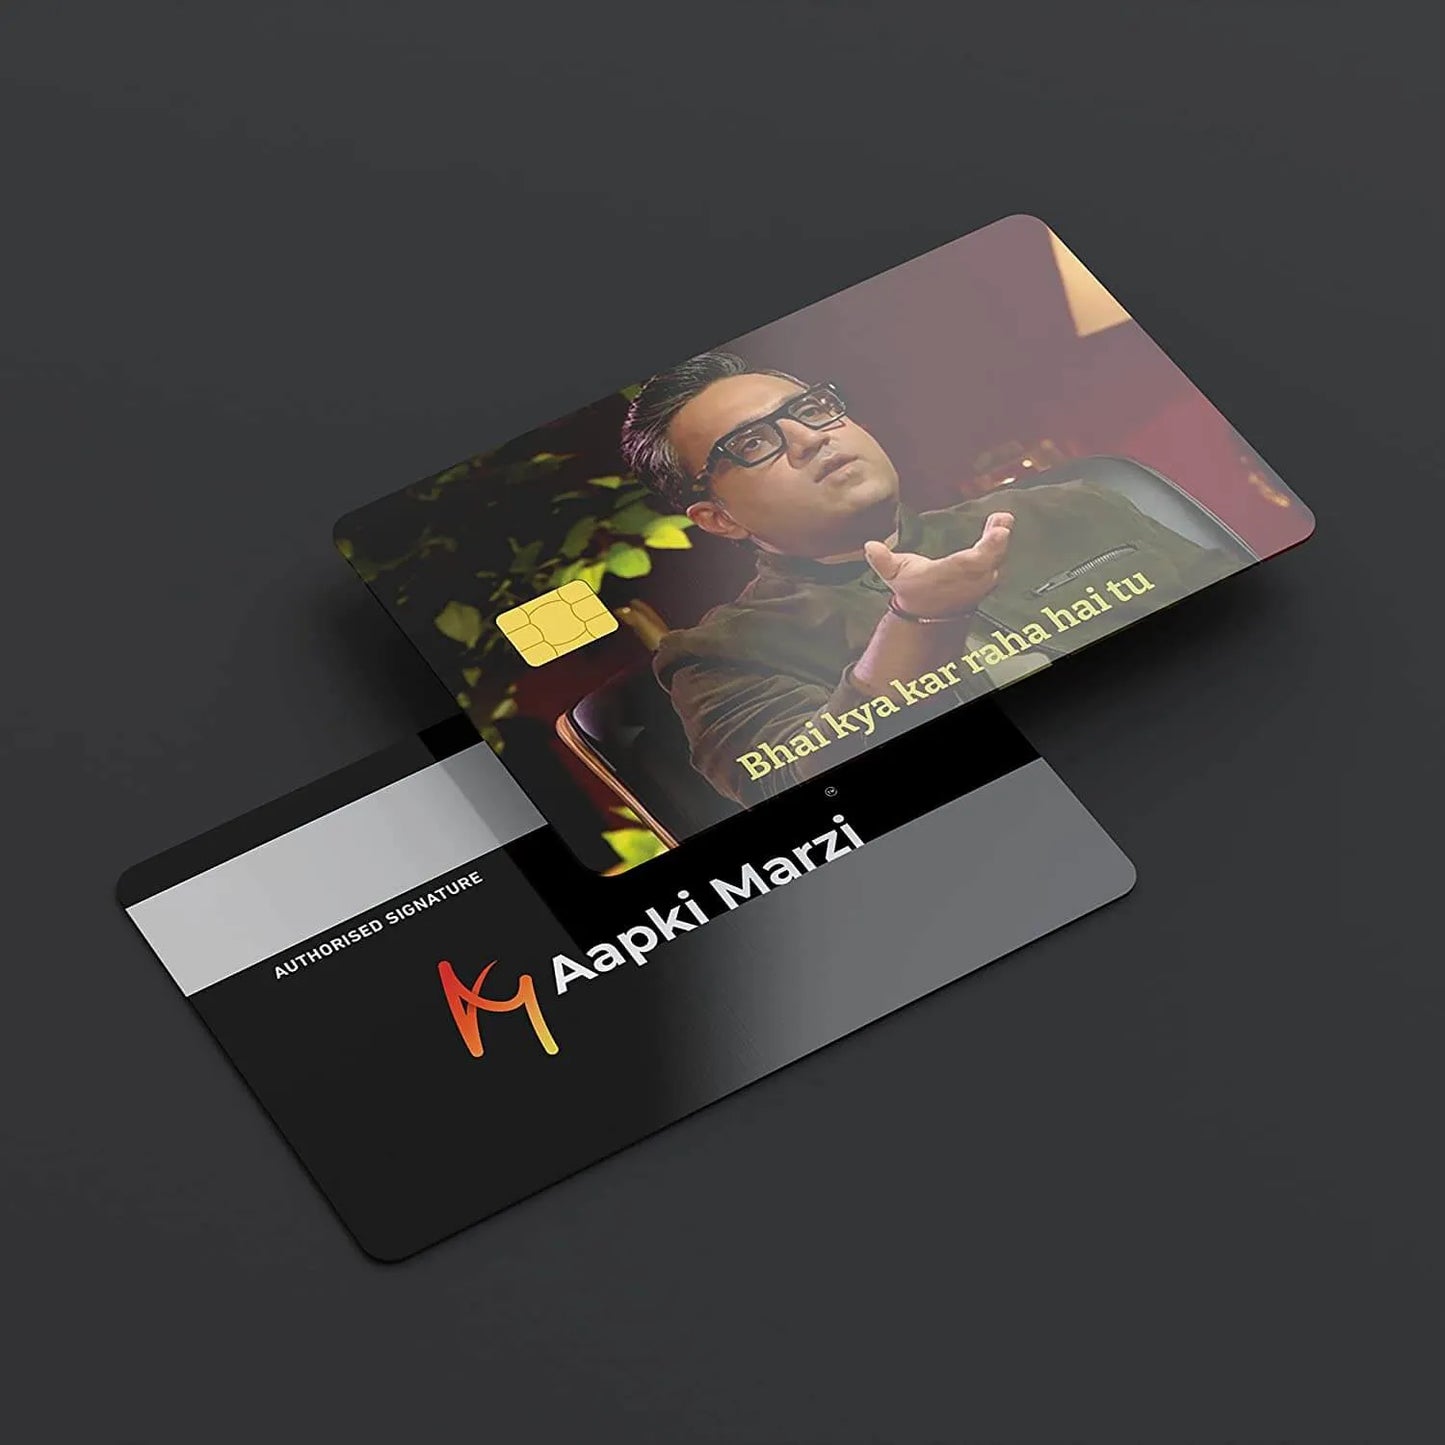 Bhai Kya Kar Raha Hai Tu credit card skins